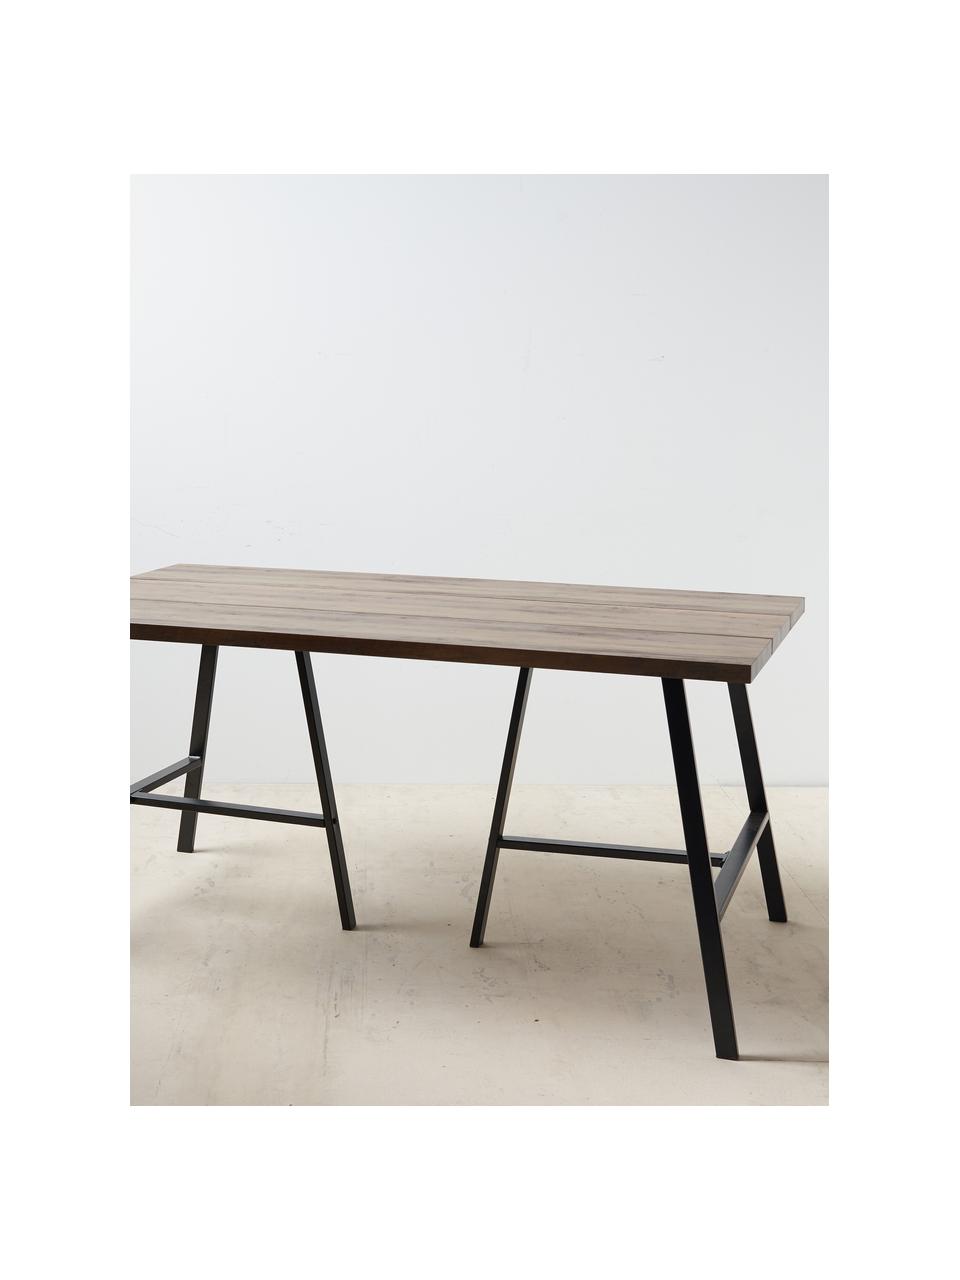 Jedálenský stôl Dinni, 160 x 90 cm, Hnedá, čierna